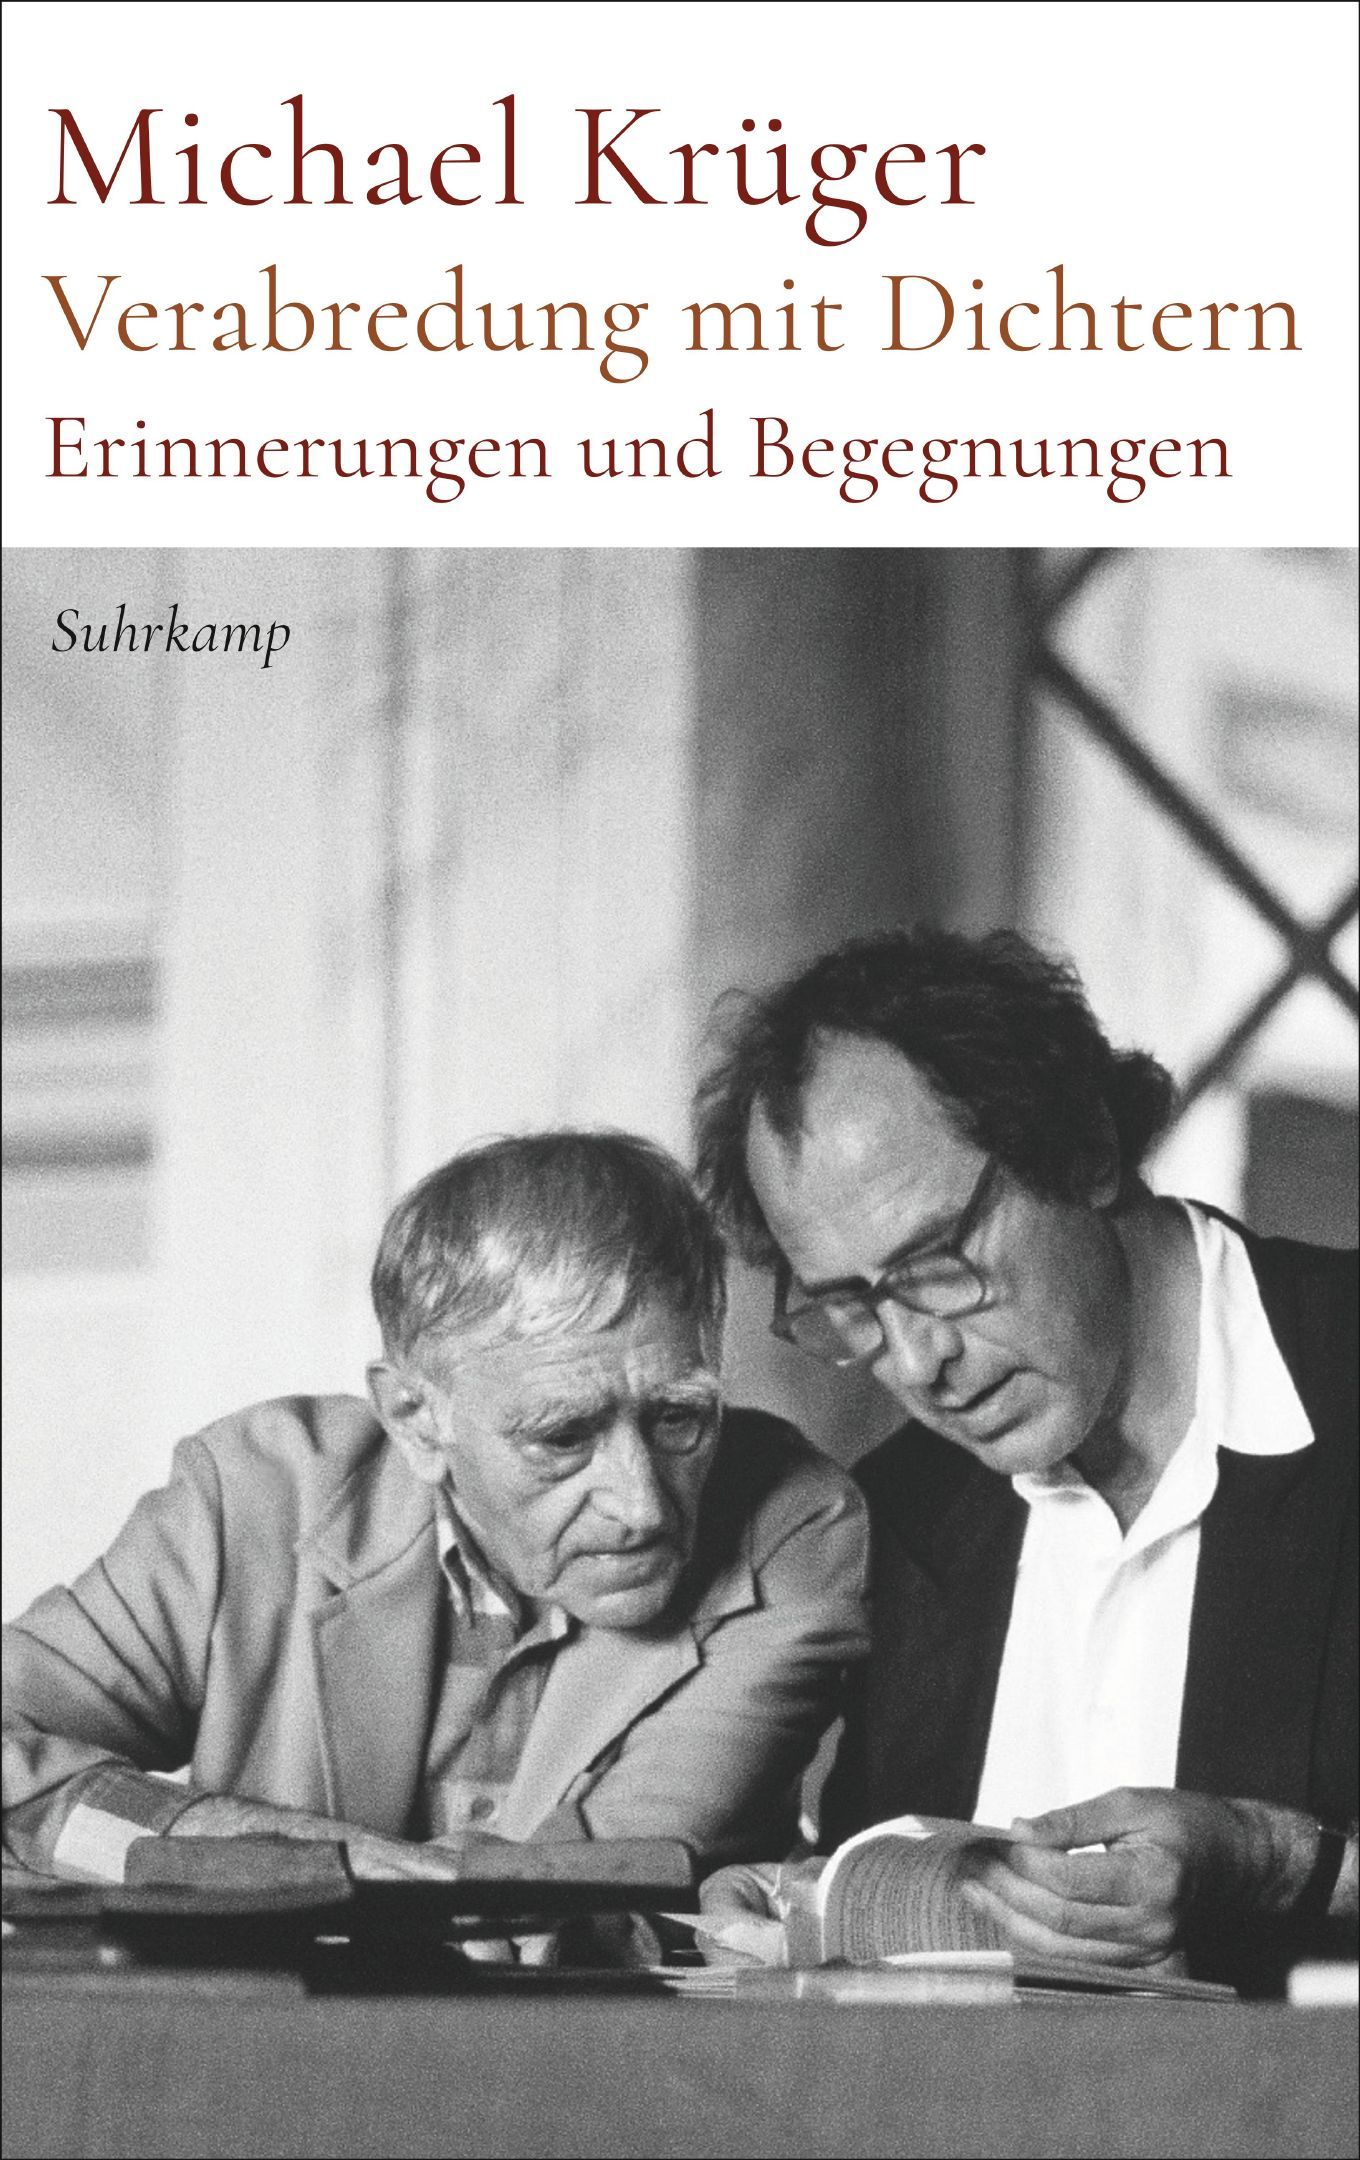 Cover von Michael Krügers Buch "Verabredung mit Dichtern"